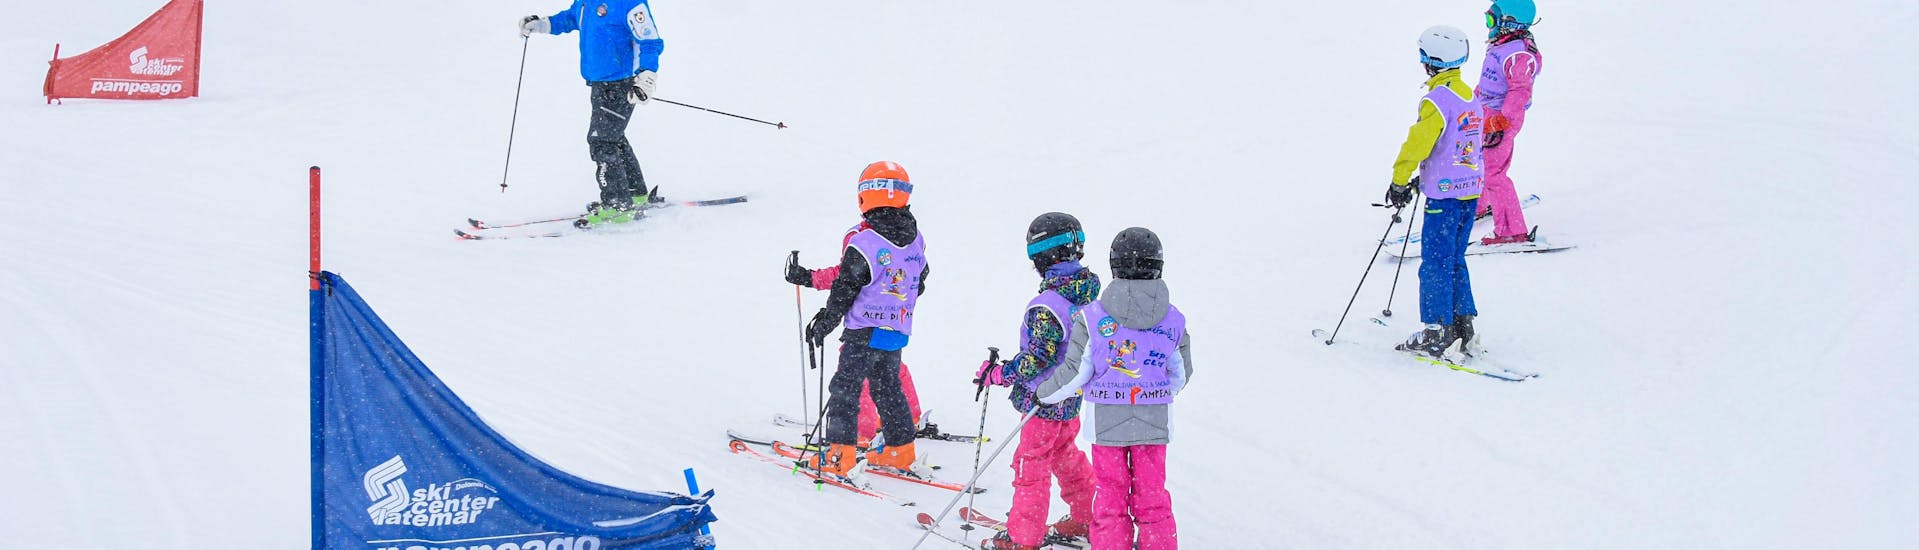 Kids Ski Lessons (4-6 y.) for Beginners with Scuola Italiana Sci e Snowboard Alpe di Pampeago - Hero image